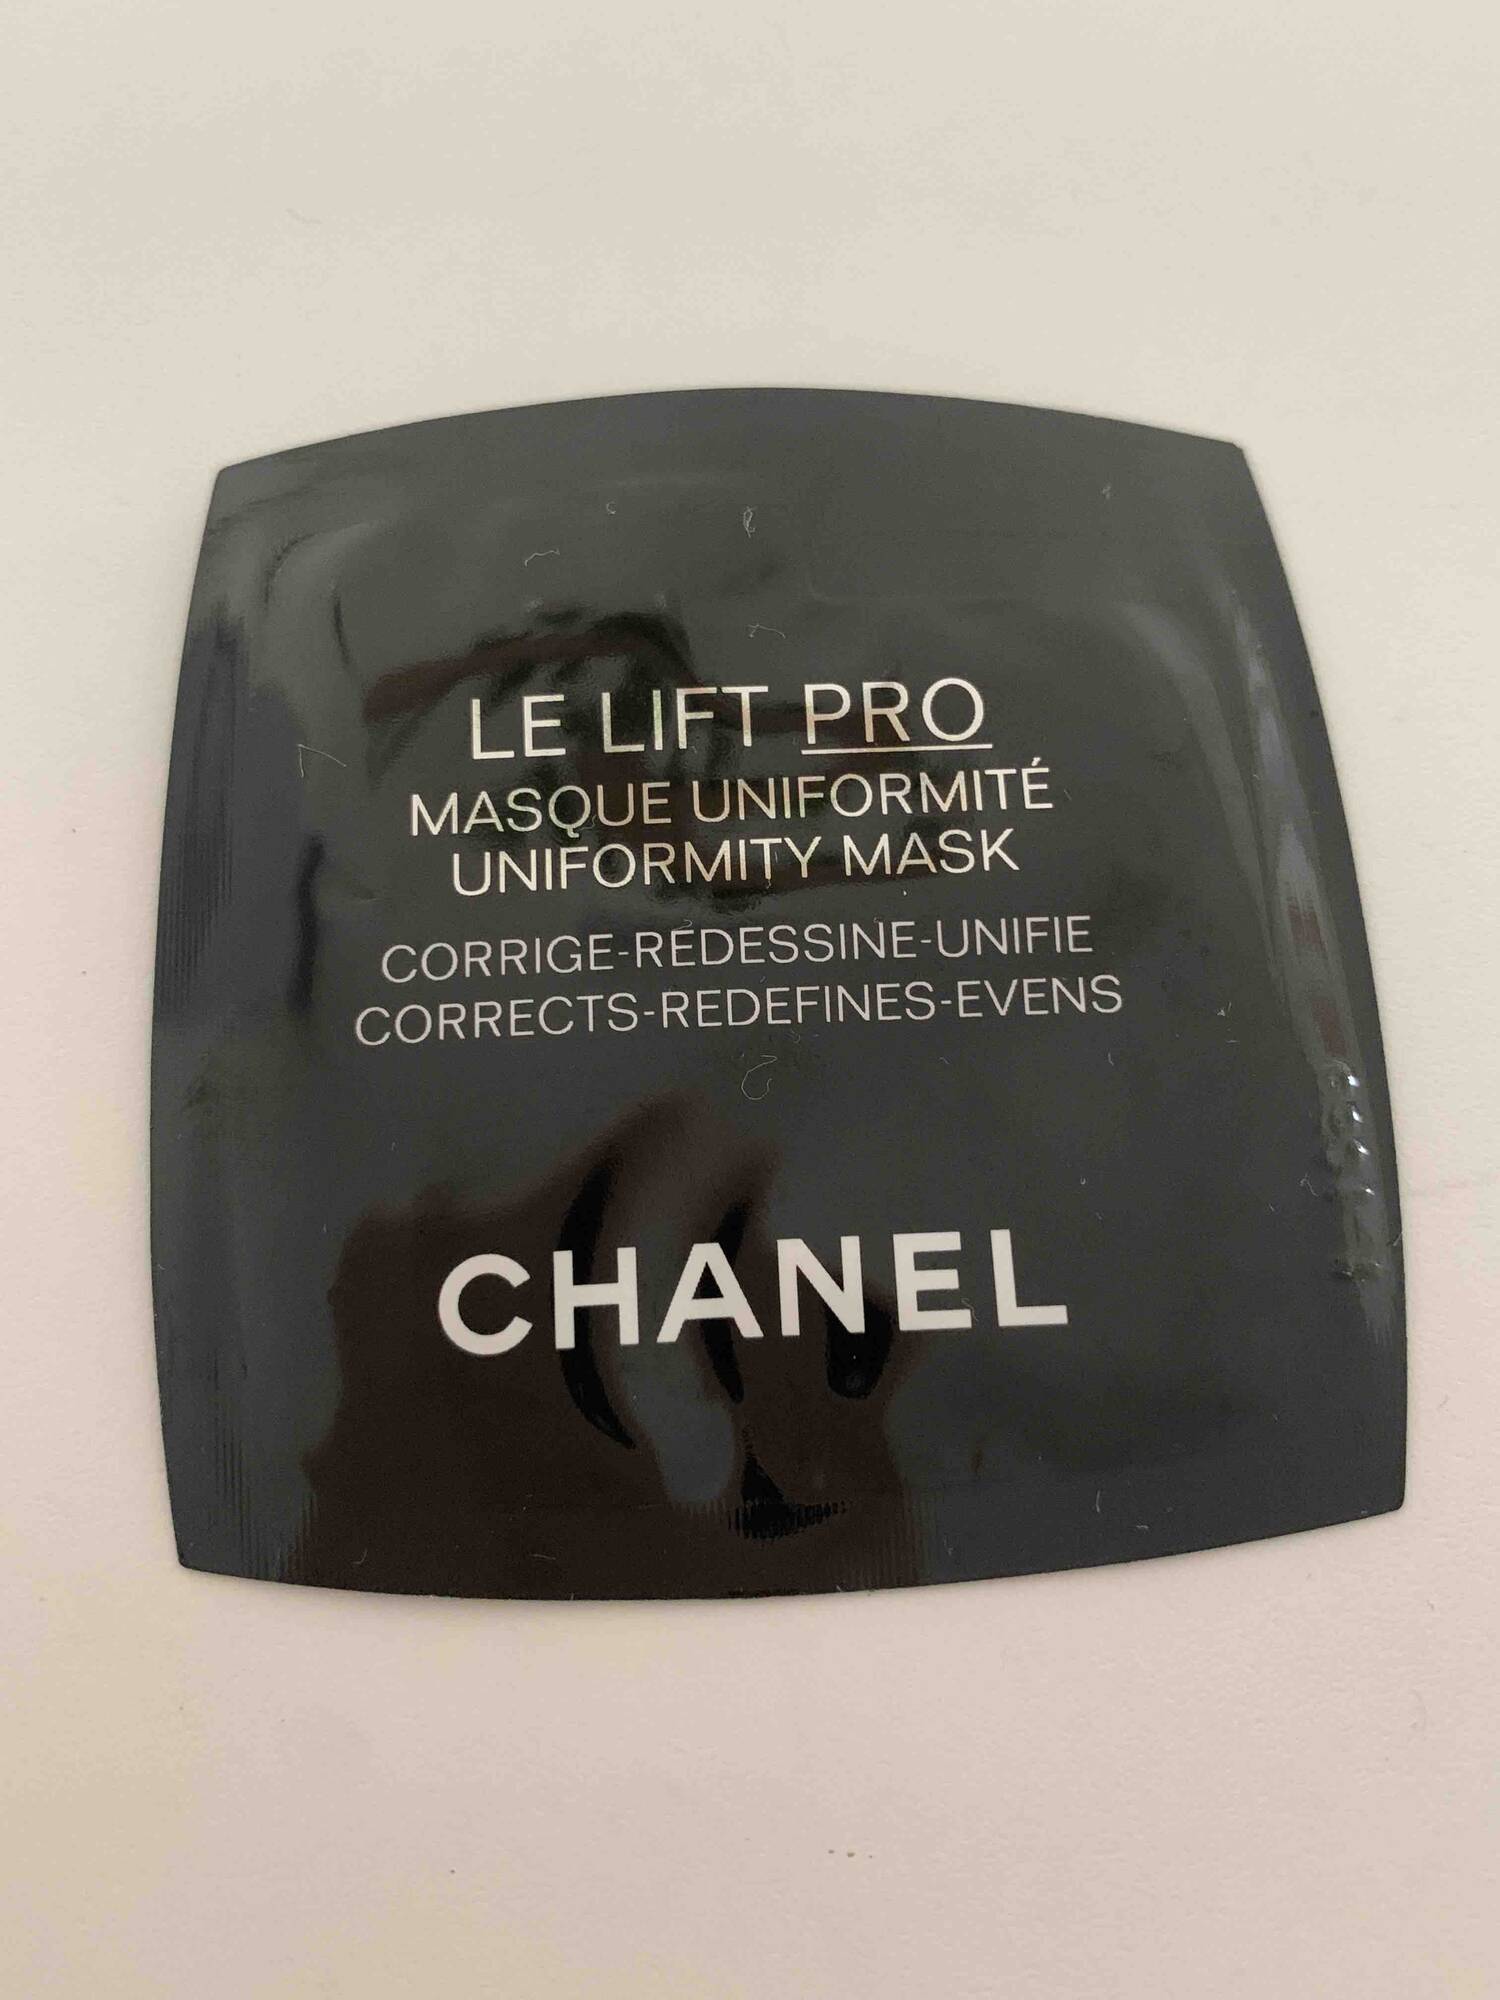 CHANEL - Le lift pro - Masque uniformité